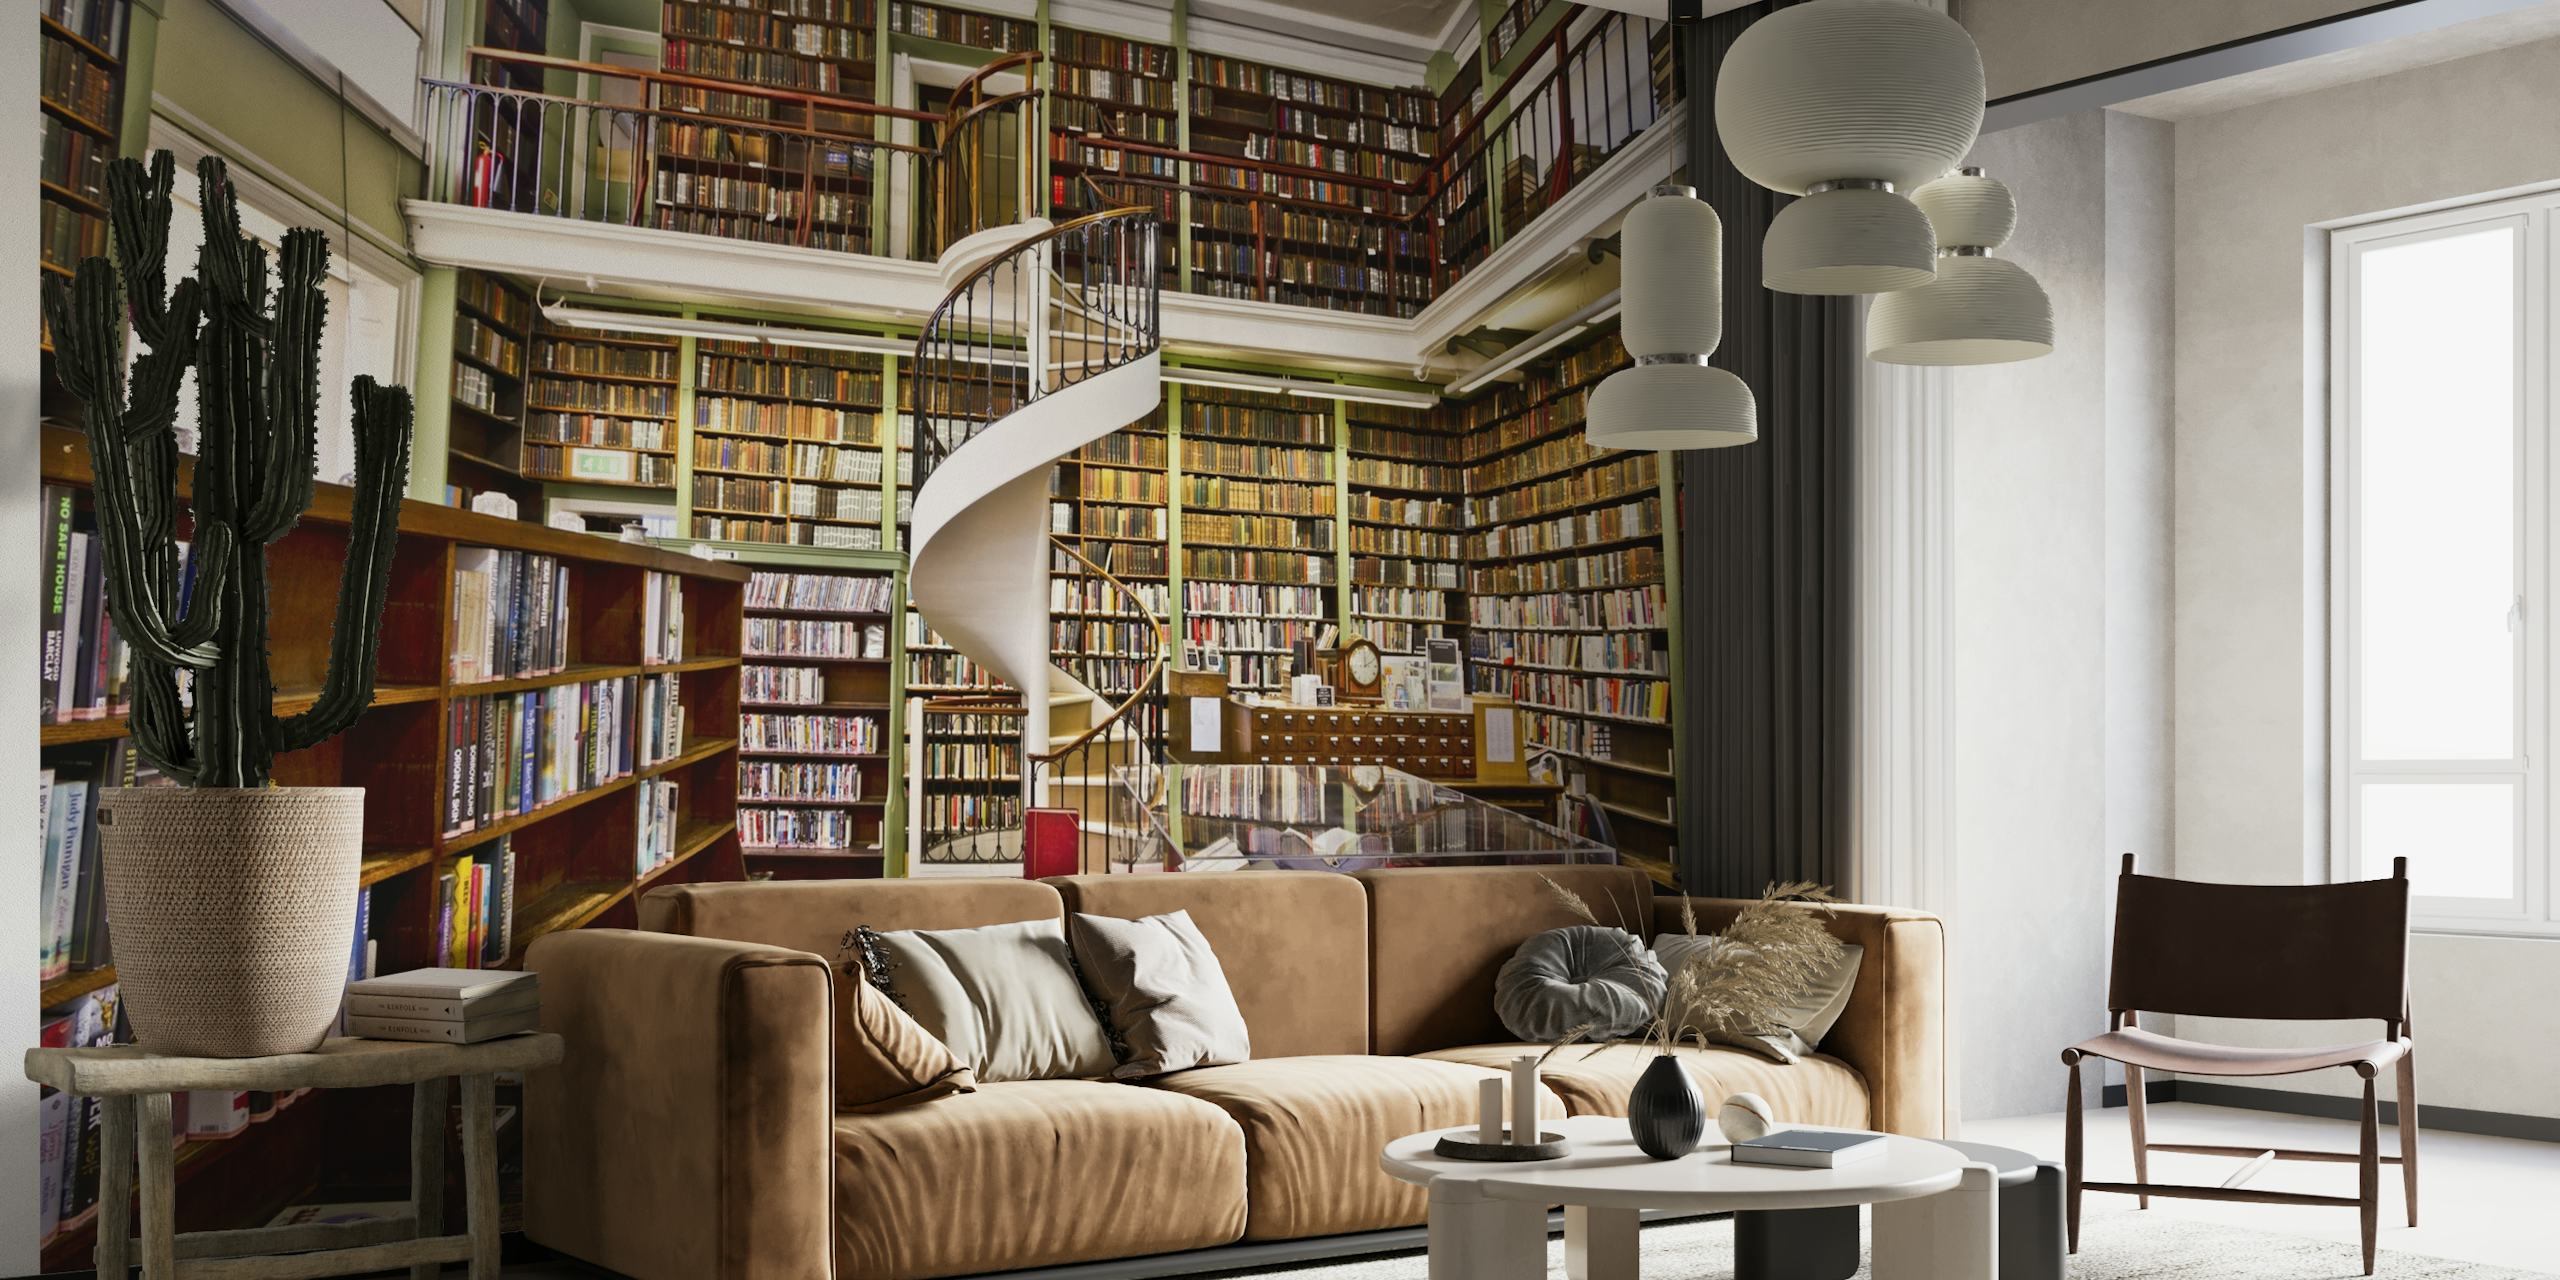 Fototapeta przedstawiająca przytulną bibliotekę z półkami na książki i kręconymi schodami